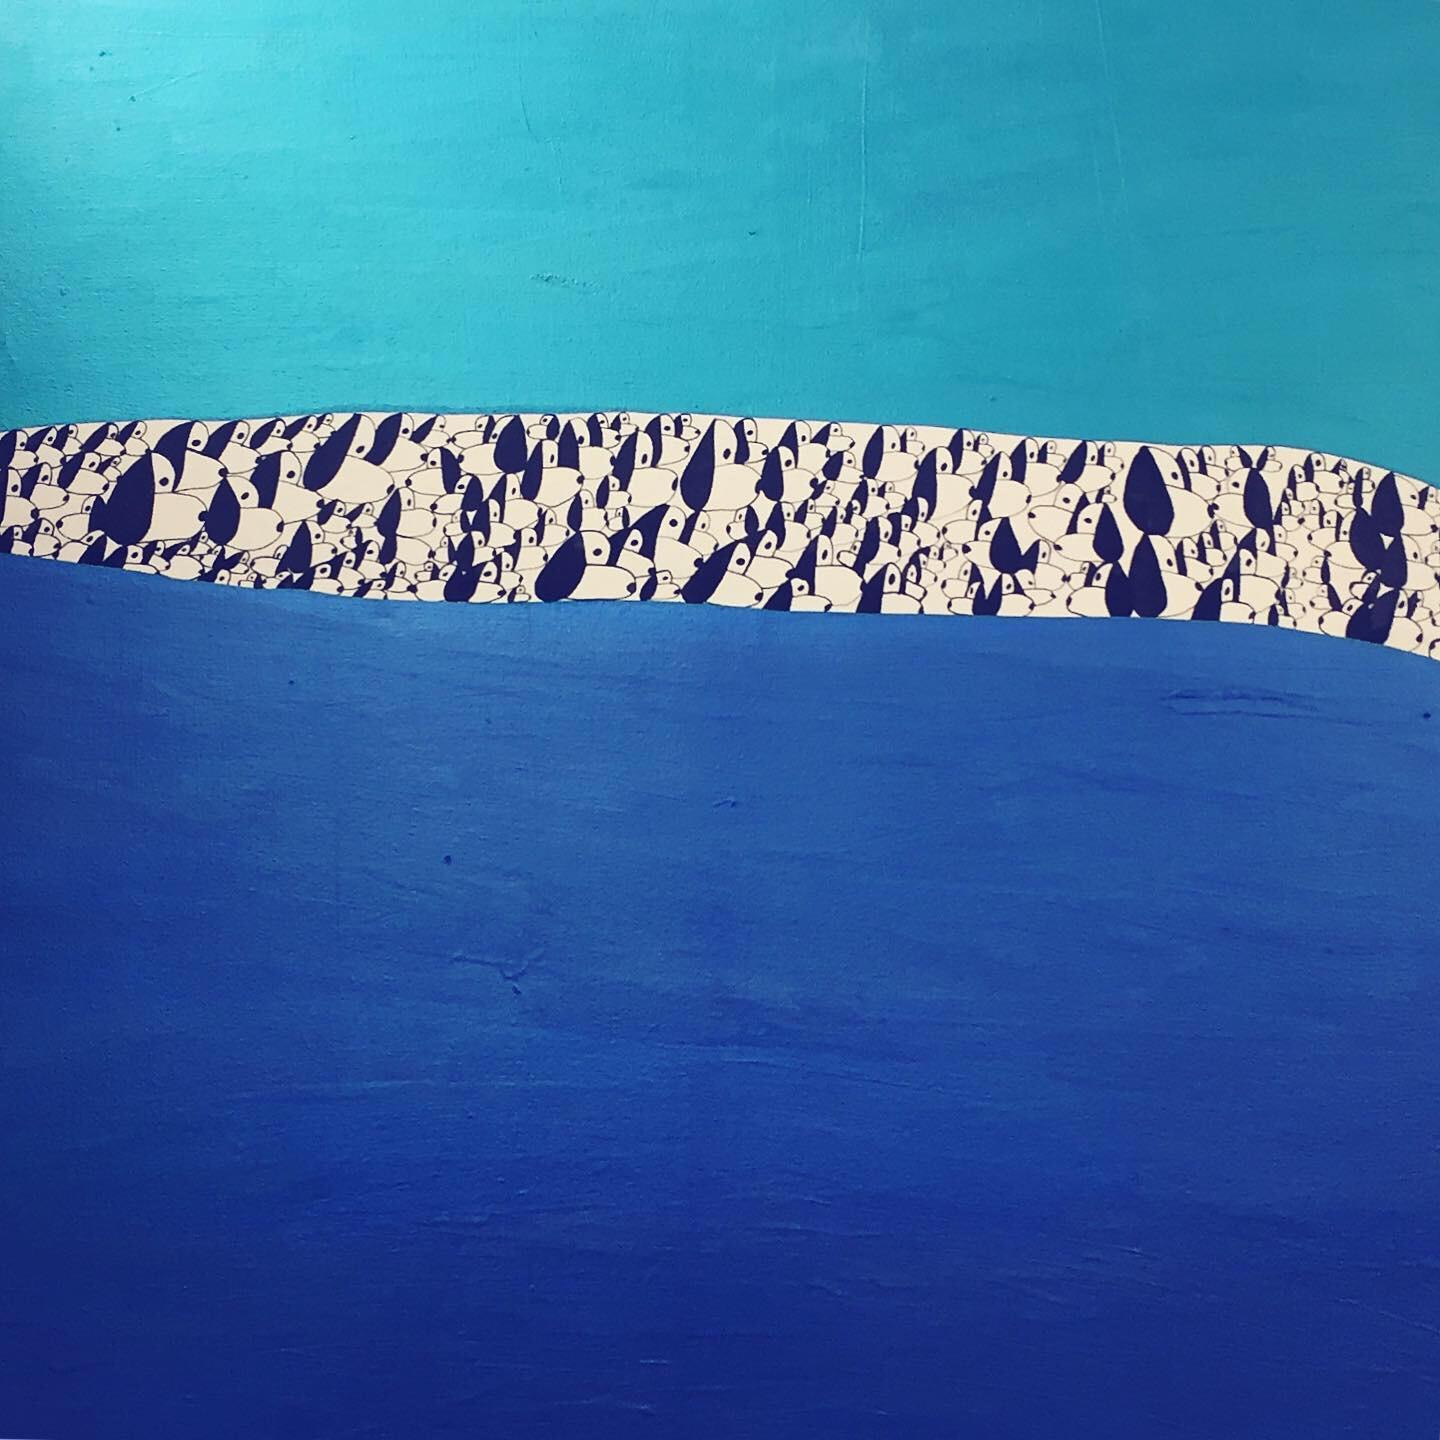 Landscape Painting Nina Bovasso - Snoopies Exodus entre deux bleus